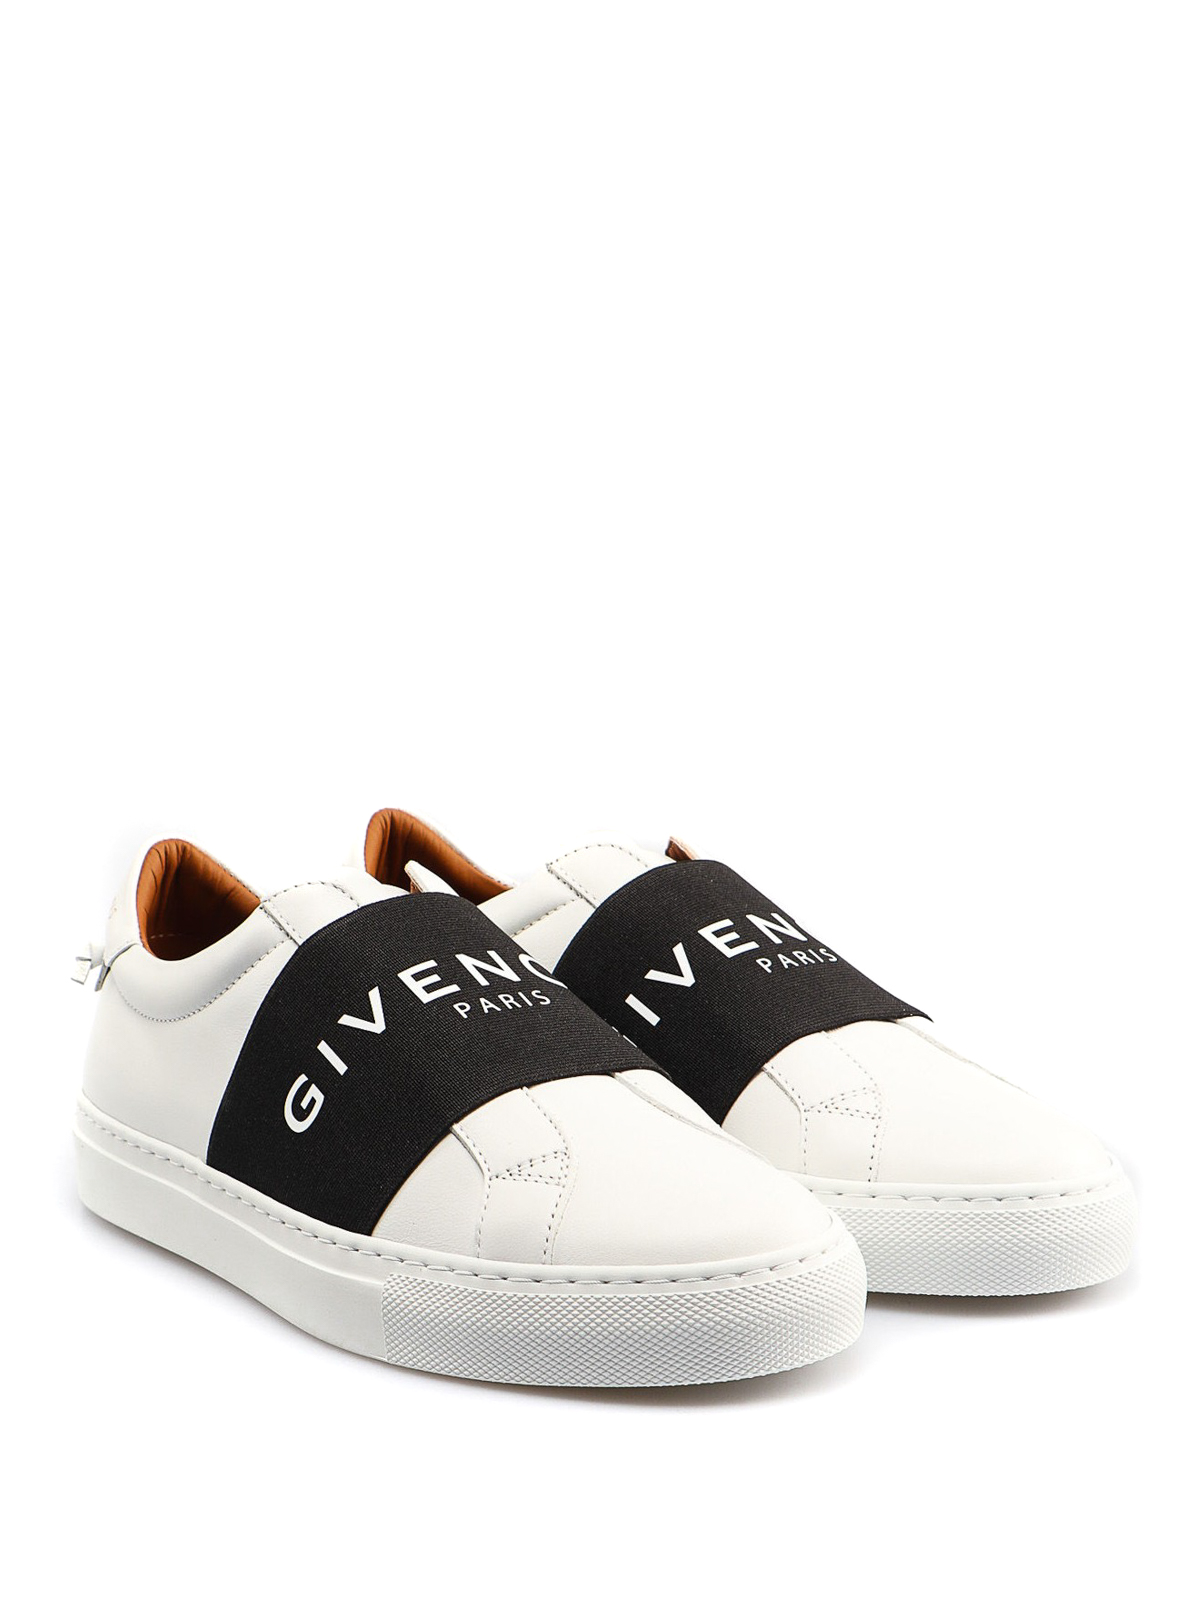 Givenchy Sneakers Black GIV RUNNER online shopping - mybudapester.com